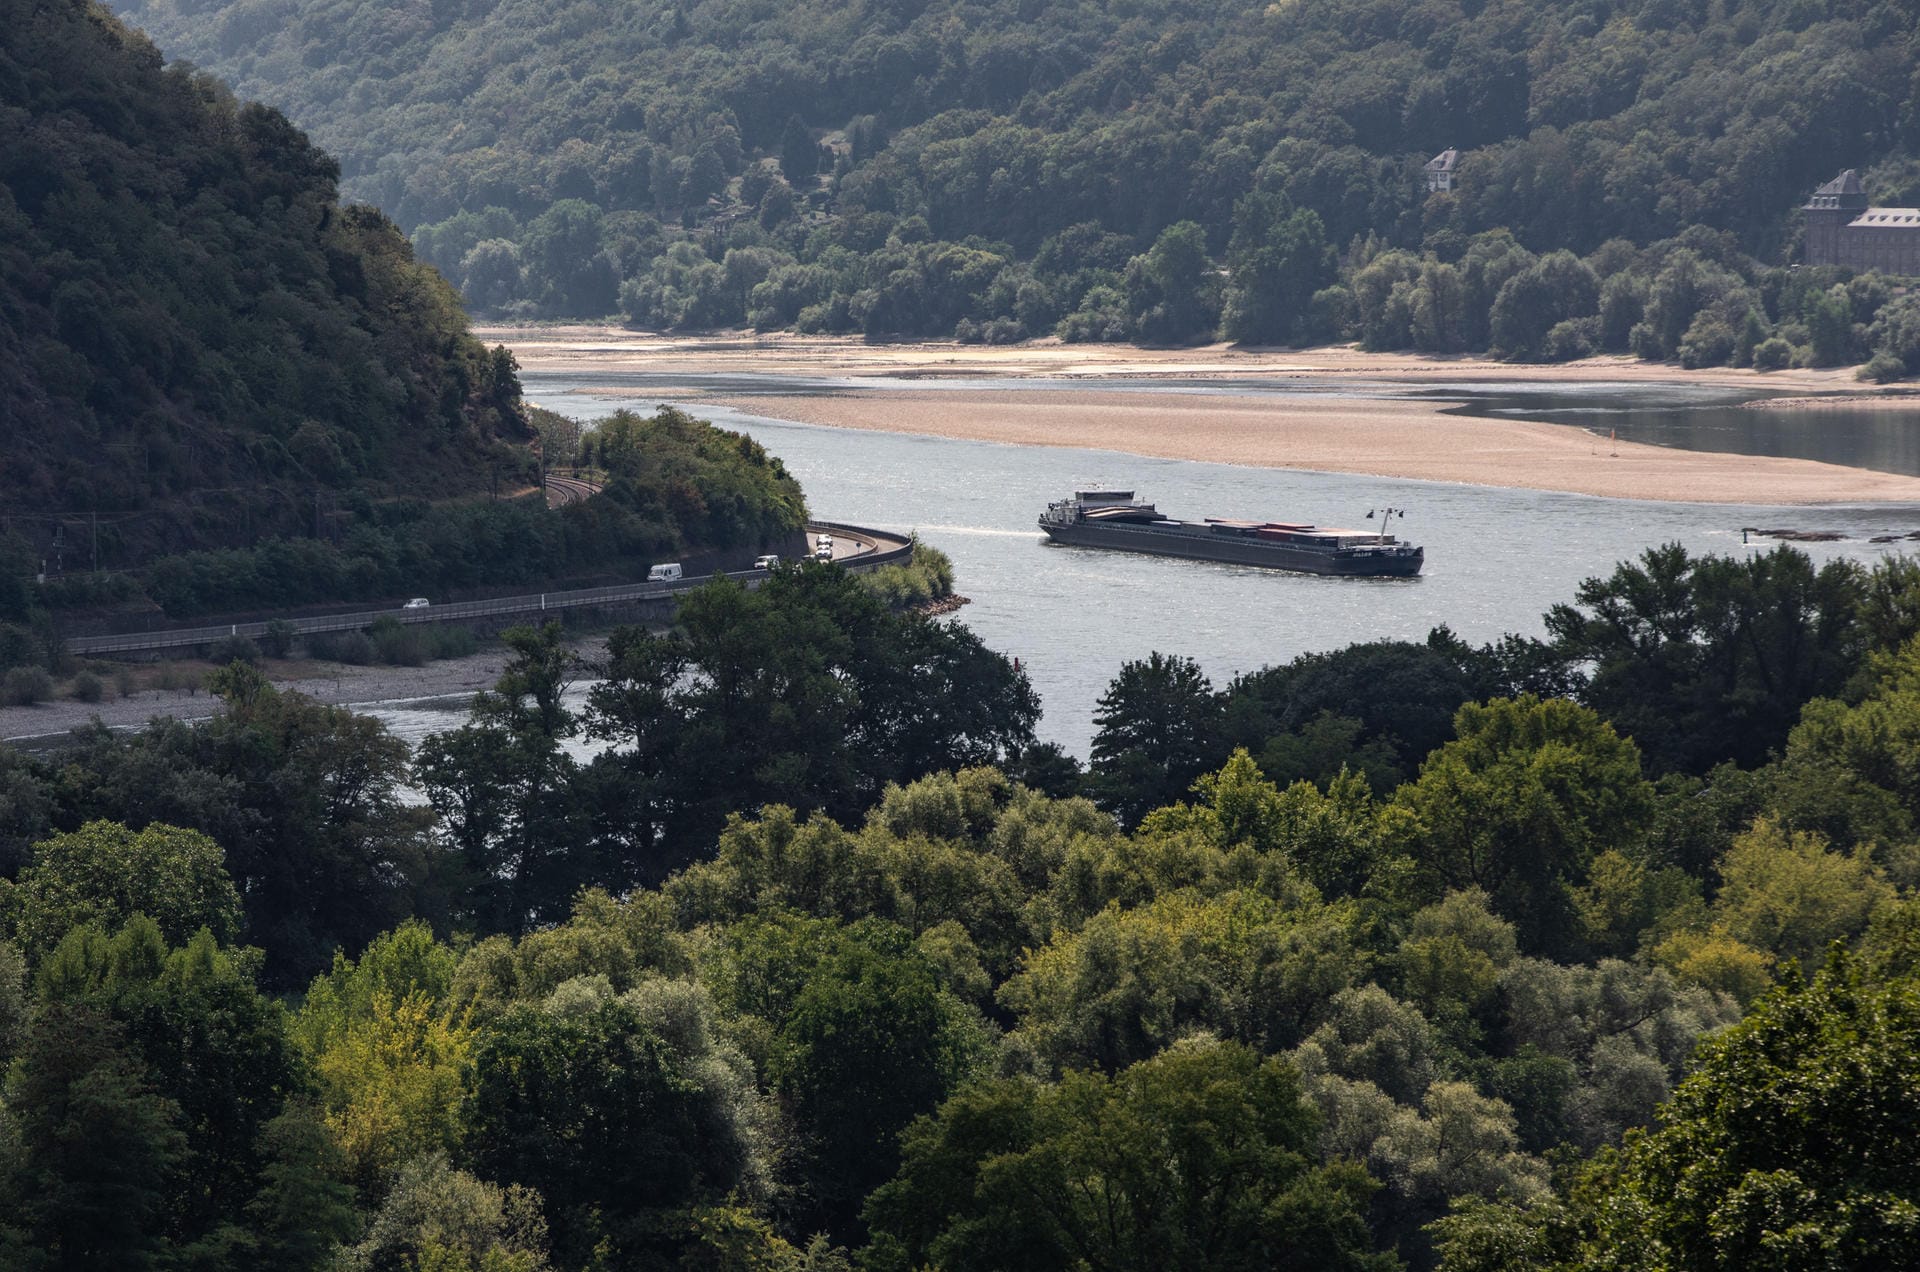 Und noch ein Bild vom Rhein: Ein Binnenschiff nimmt die Biegung des Rheins oberhalb von Bacharach.